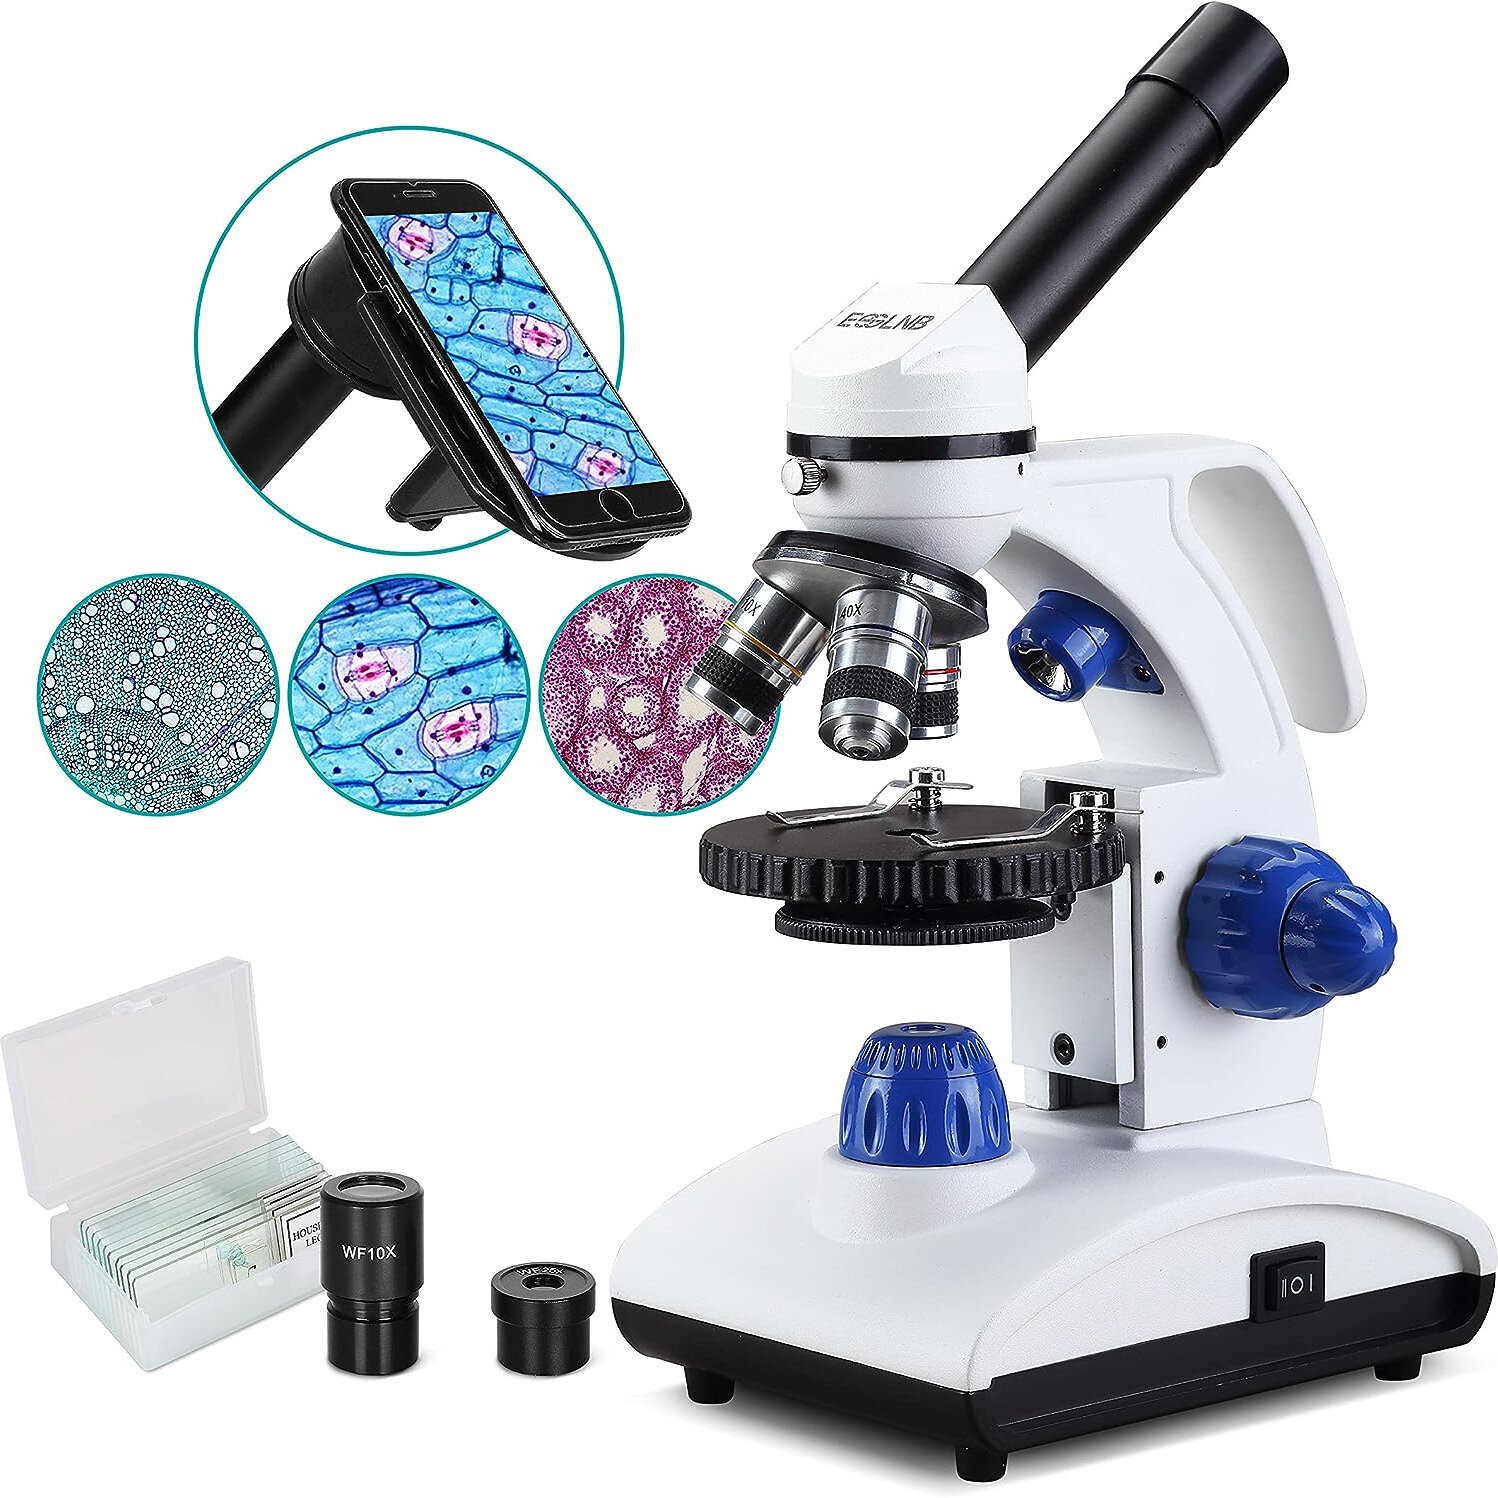 [US Direct] ESSLNB ES1045 Microscopio 1000X Microscopio per bambini con luce biologica LED e adattatore per telefono, lenti in vetro ottico completamente metalliche